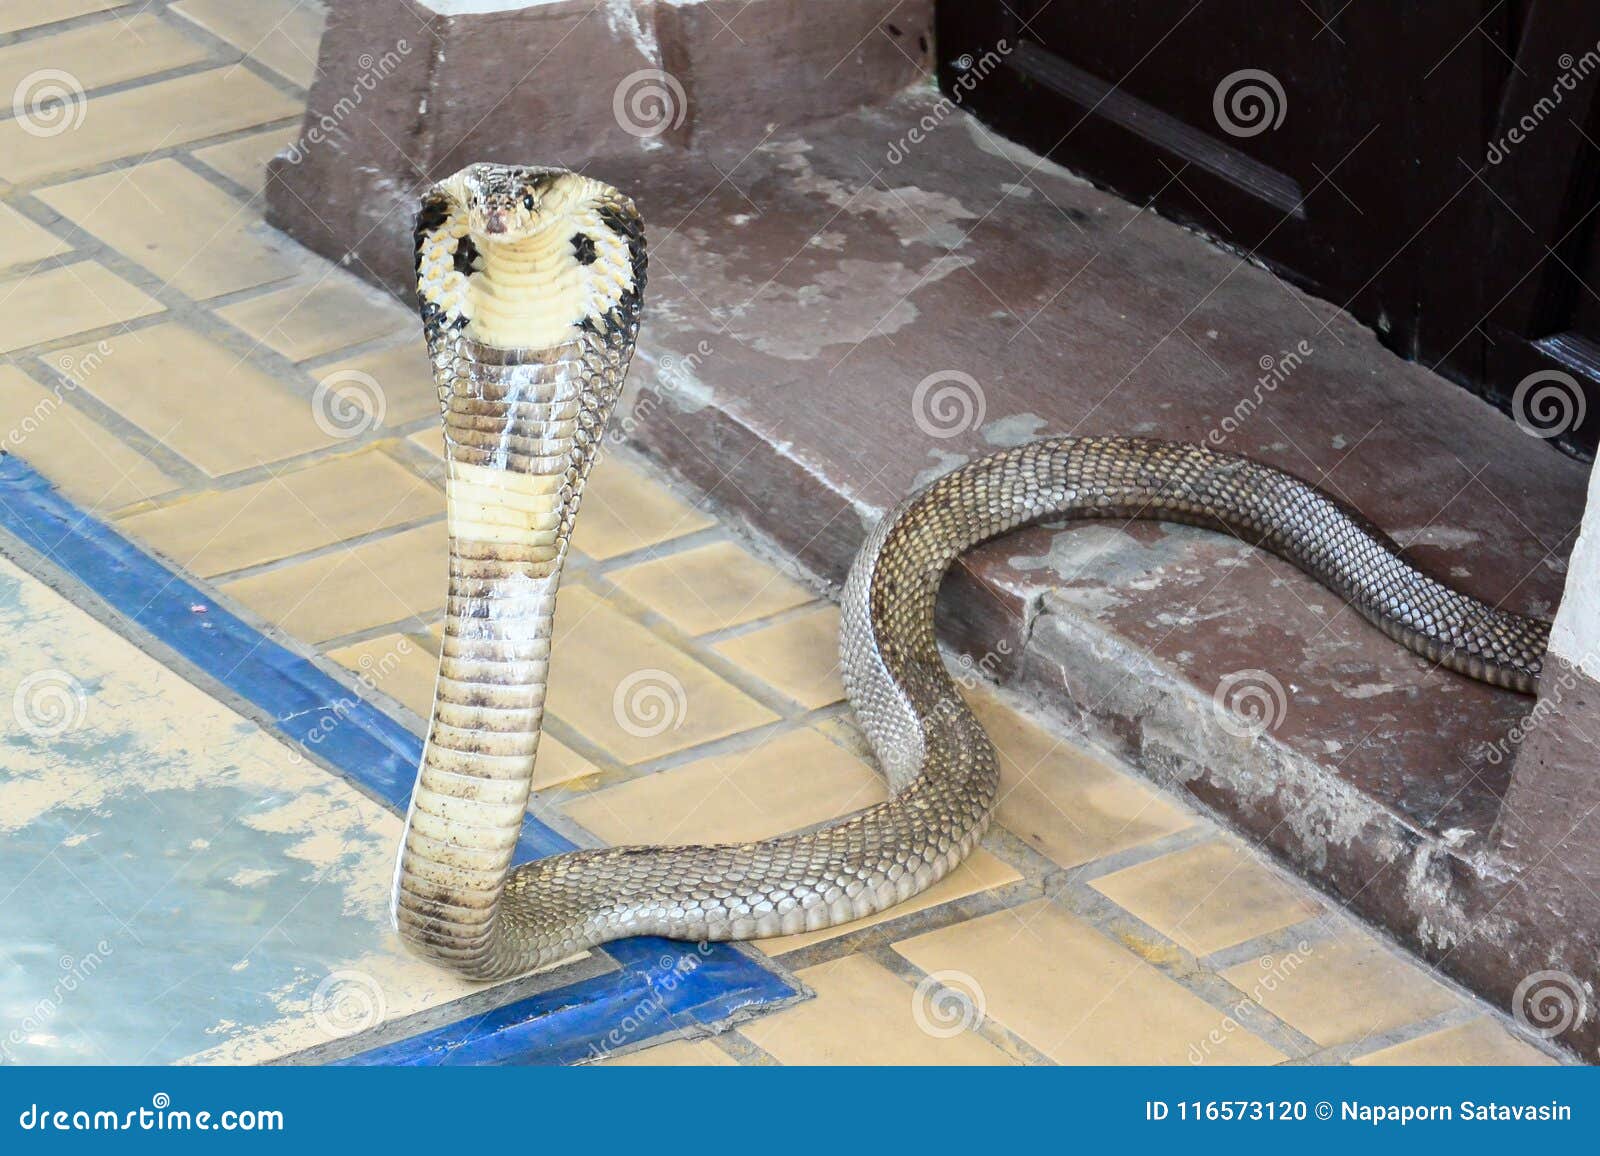 Σιαμέζο cobra. Ένα τεράστιο σιαμέζο cobra είναι έτοιμο για την επίθεση αυτό θήραμα ` s